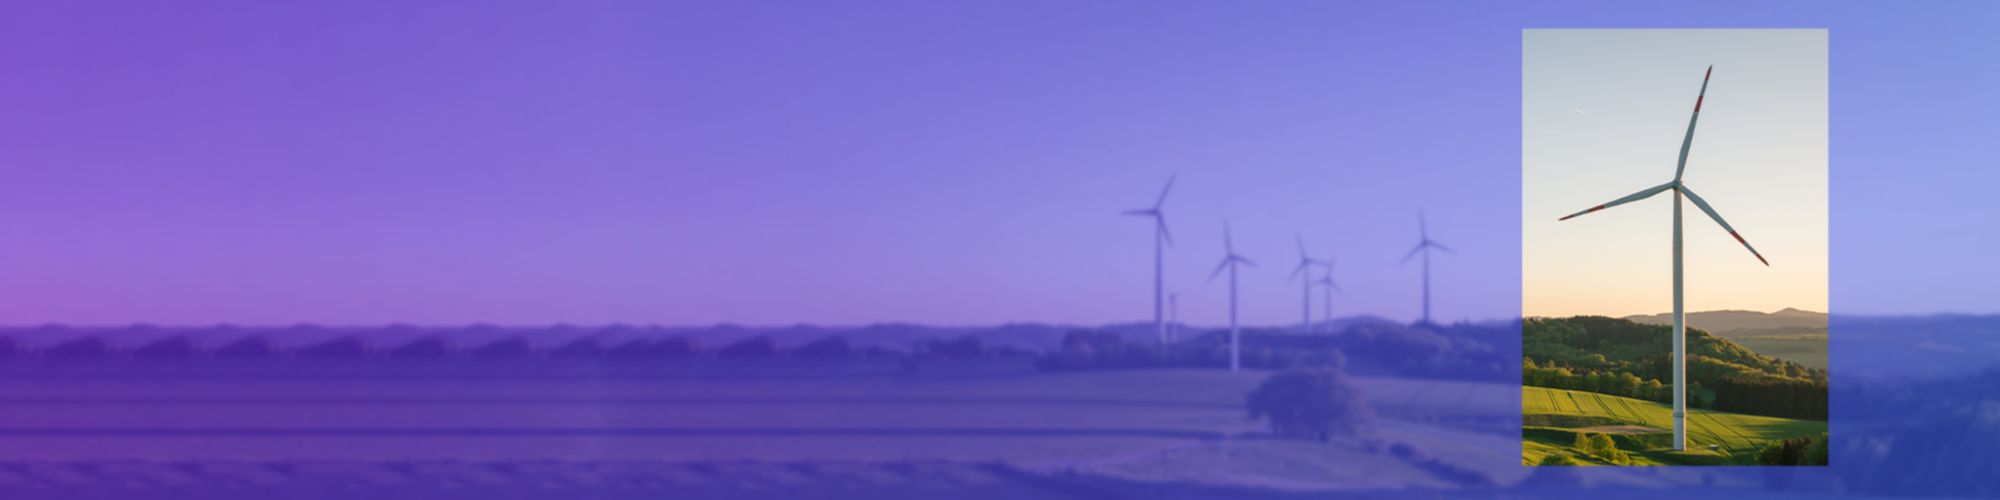 windfarm in purple blue gradient